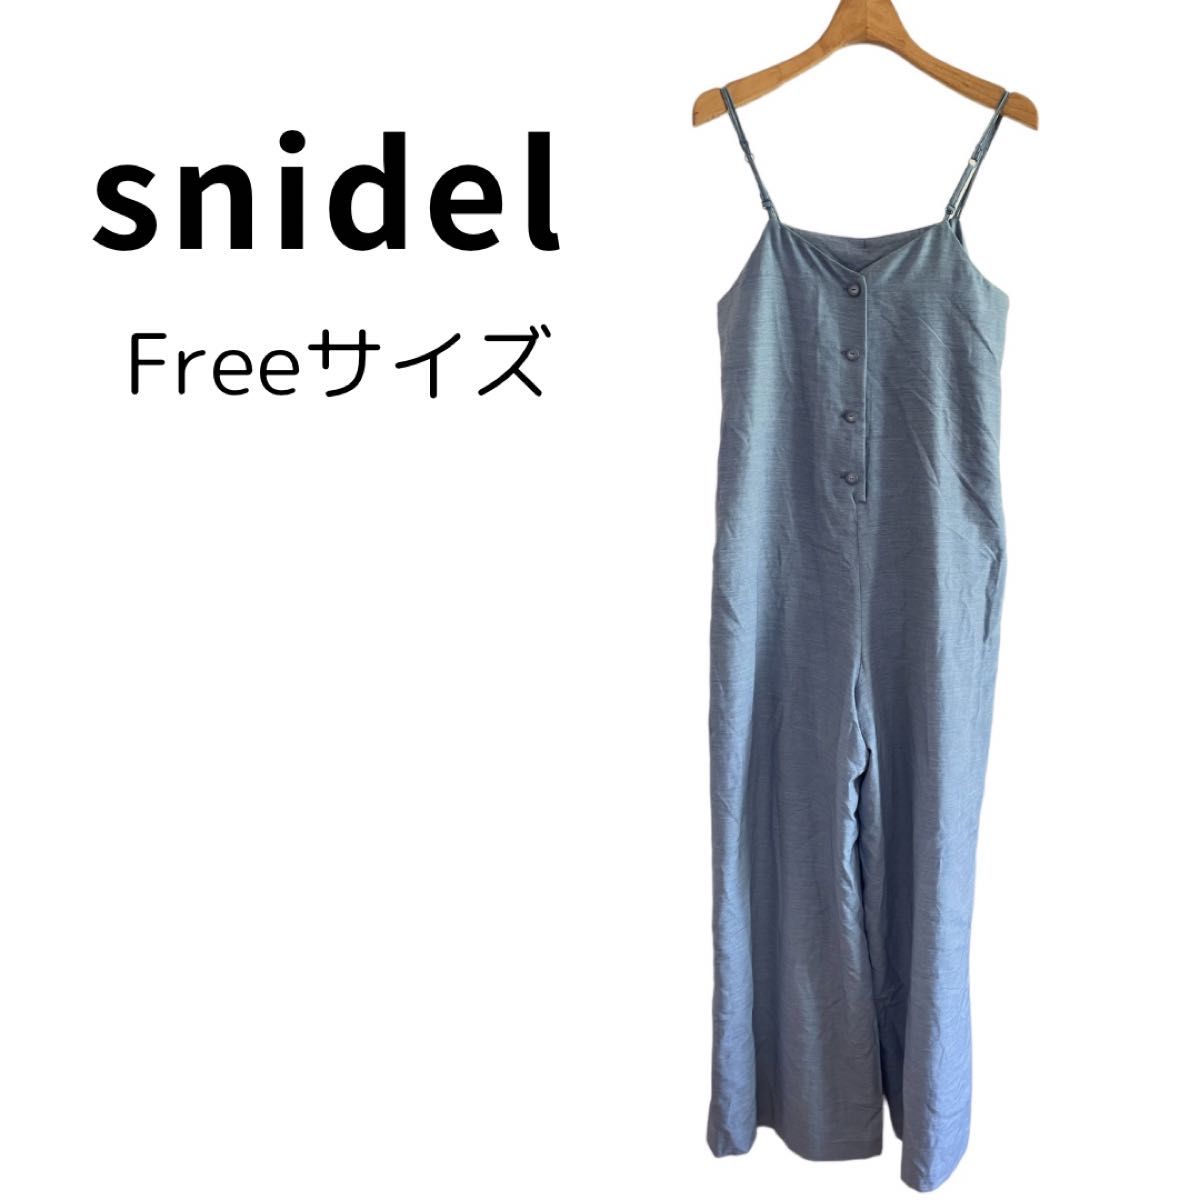 【美品】snidel スナイデル サロペット オールインワン フリーサイズ オーバーオール ワイドパンツ 